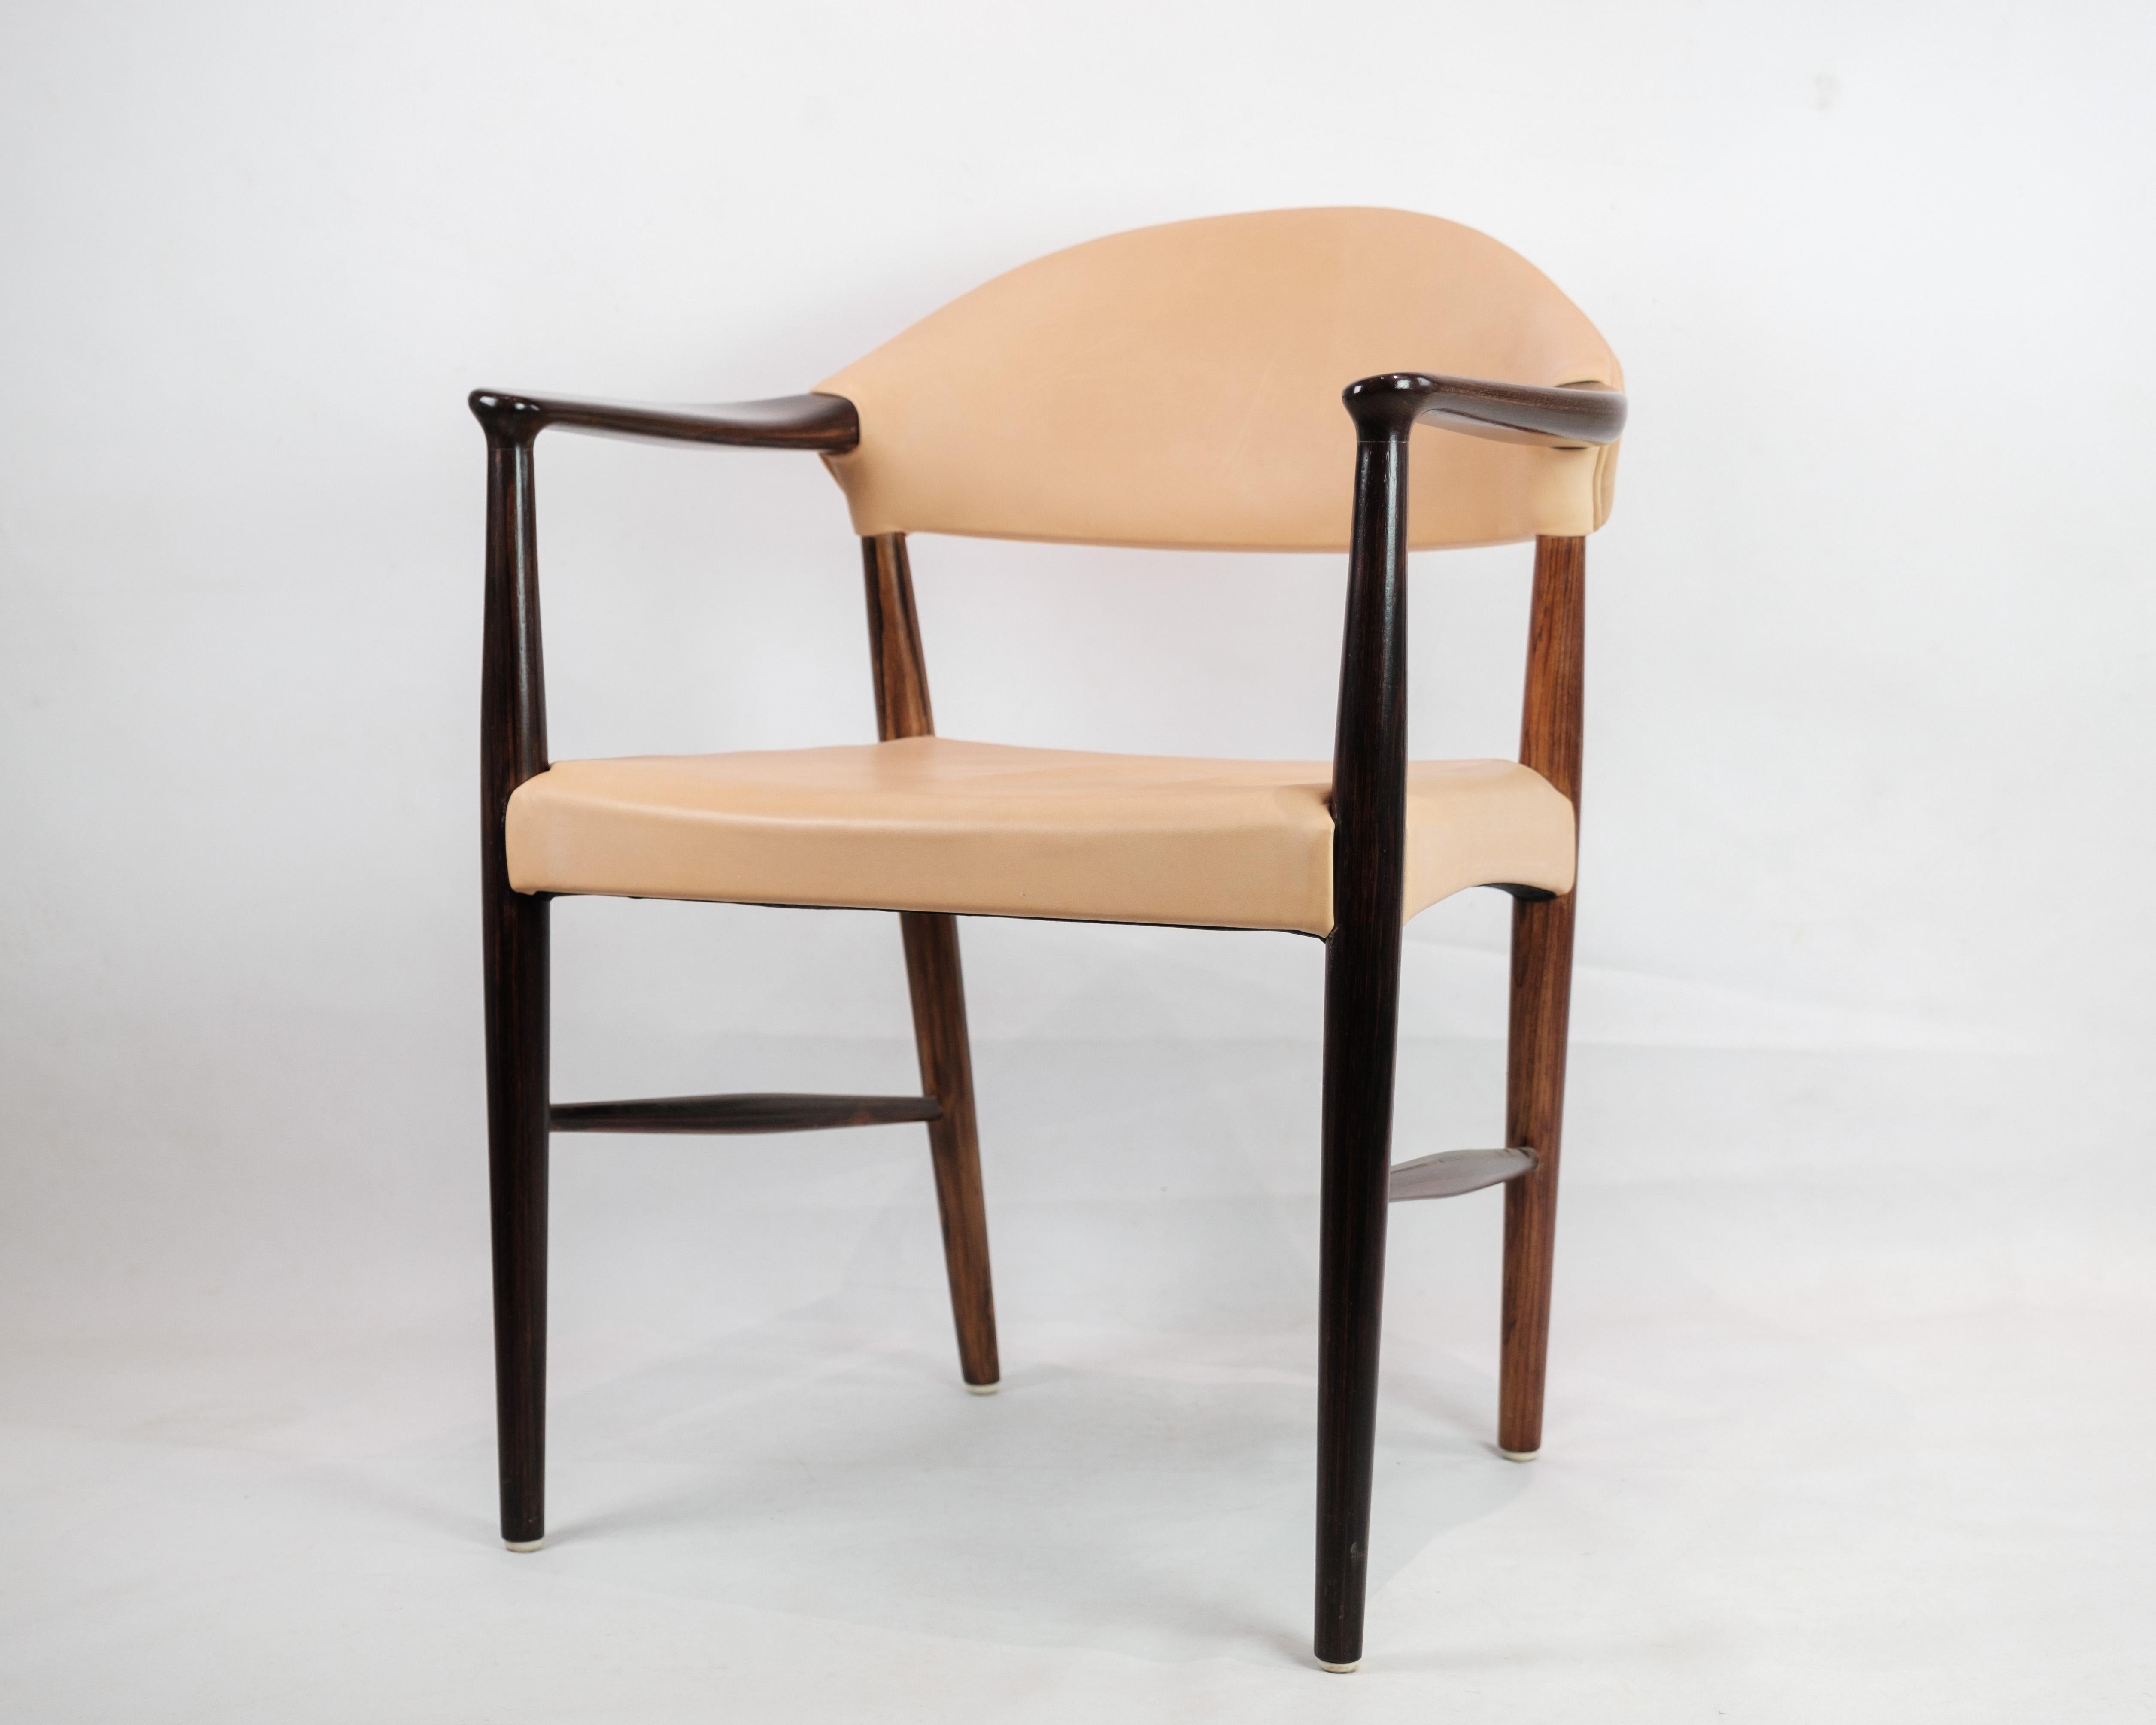 Cette chaise de bureau/fauteuil en palissandre luxueux, complété par un revêtement en cuir naturel clair, est une pièce intemporelle du design danois des années 1960. Fabriquée par le talentueux designer Kurt Eleg, cette chaise respire l'élégance et